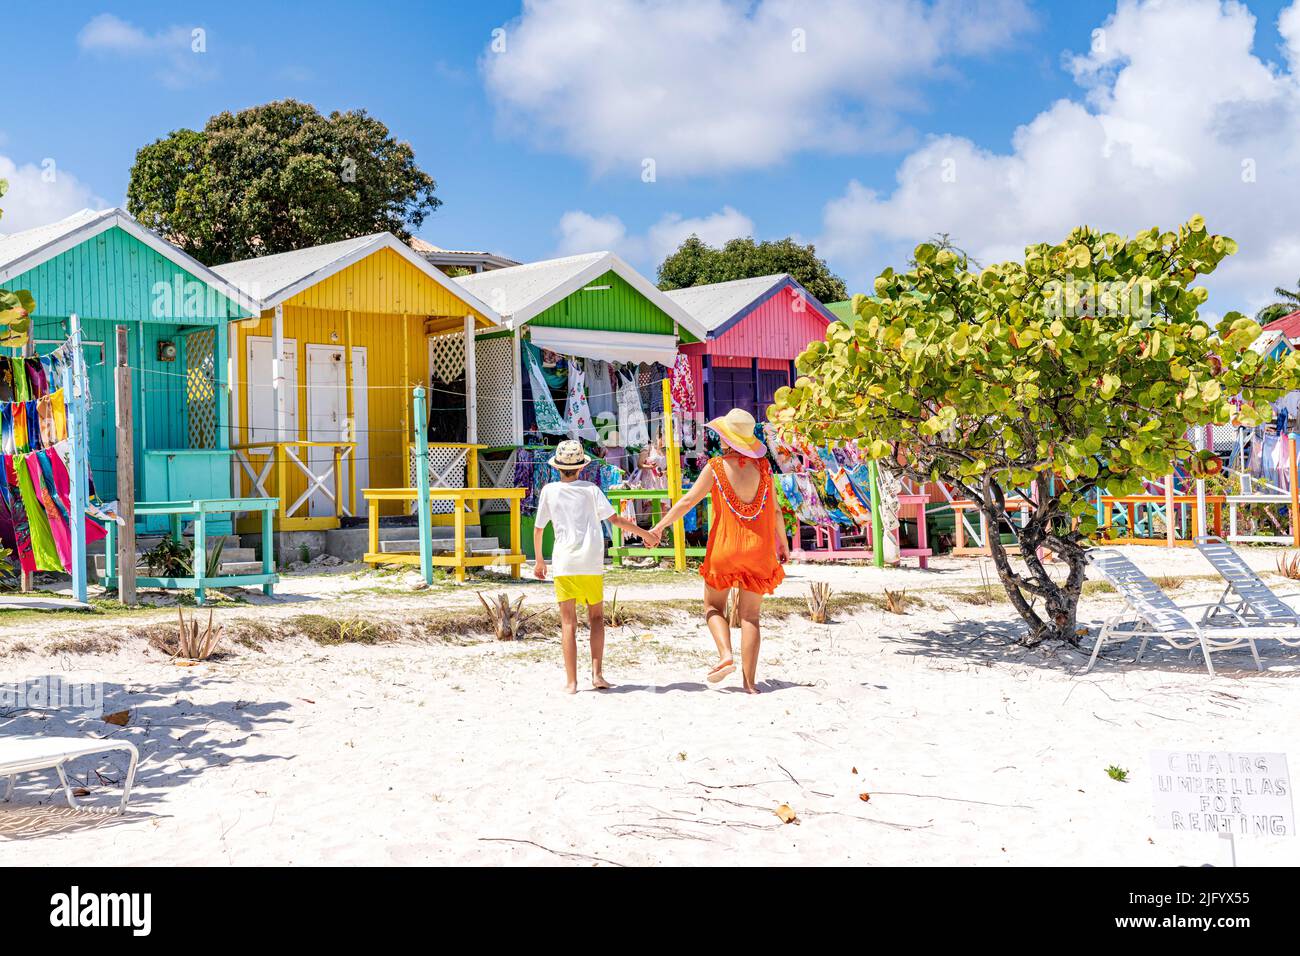 Mutter mit einem kleinen Jungen, der sich die bunten Strandhütten mit Souvenirs ansieht, Antigua, Leeward Islands, Westindien, Karibik, Mittelamerika Stockfoto